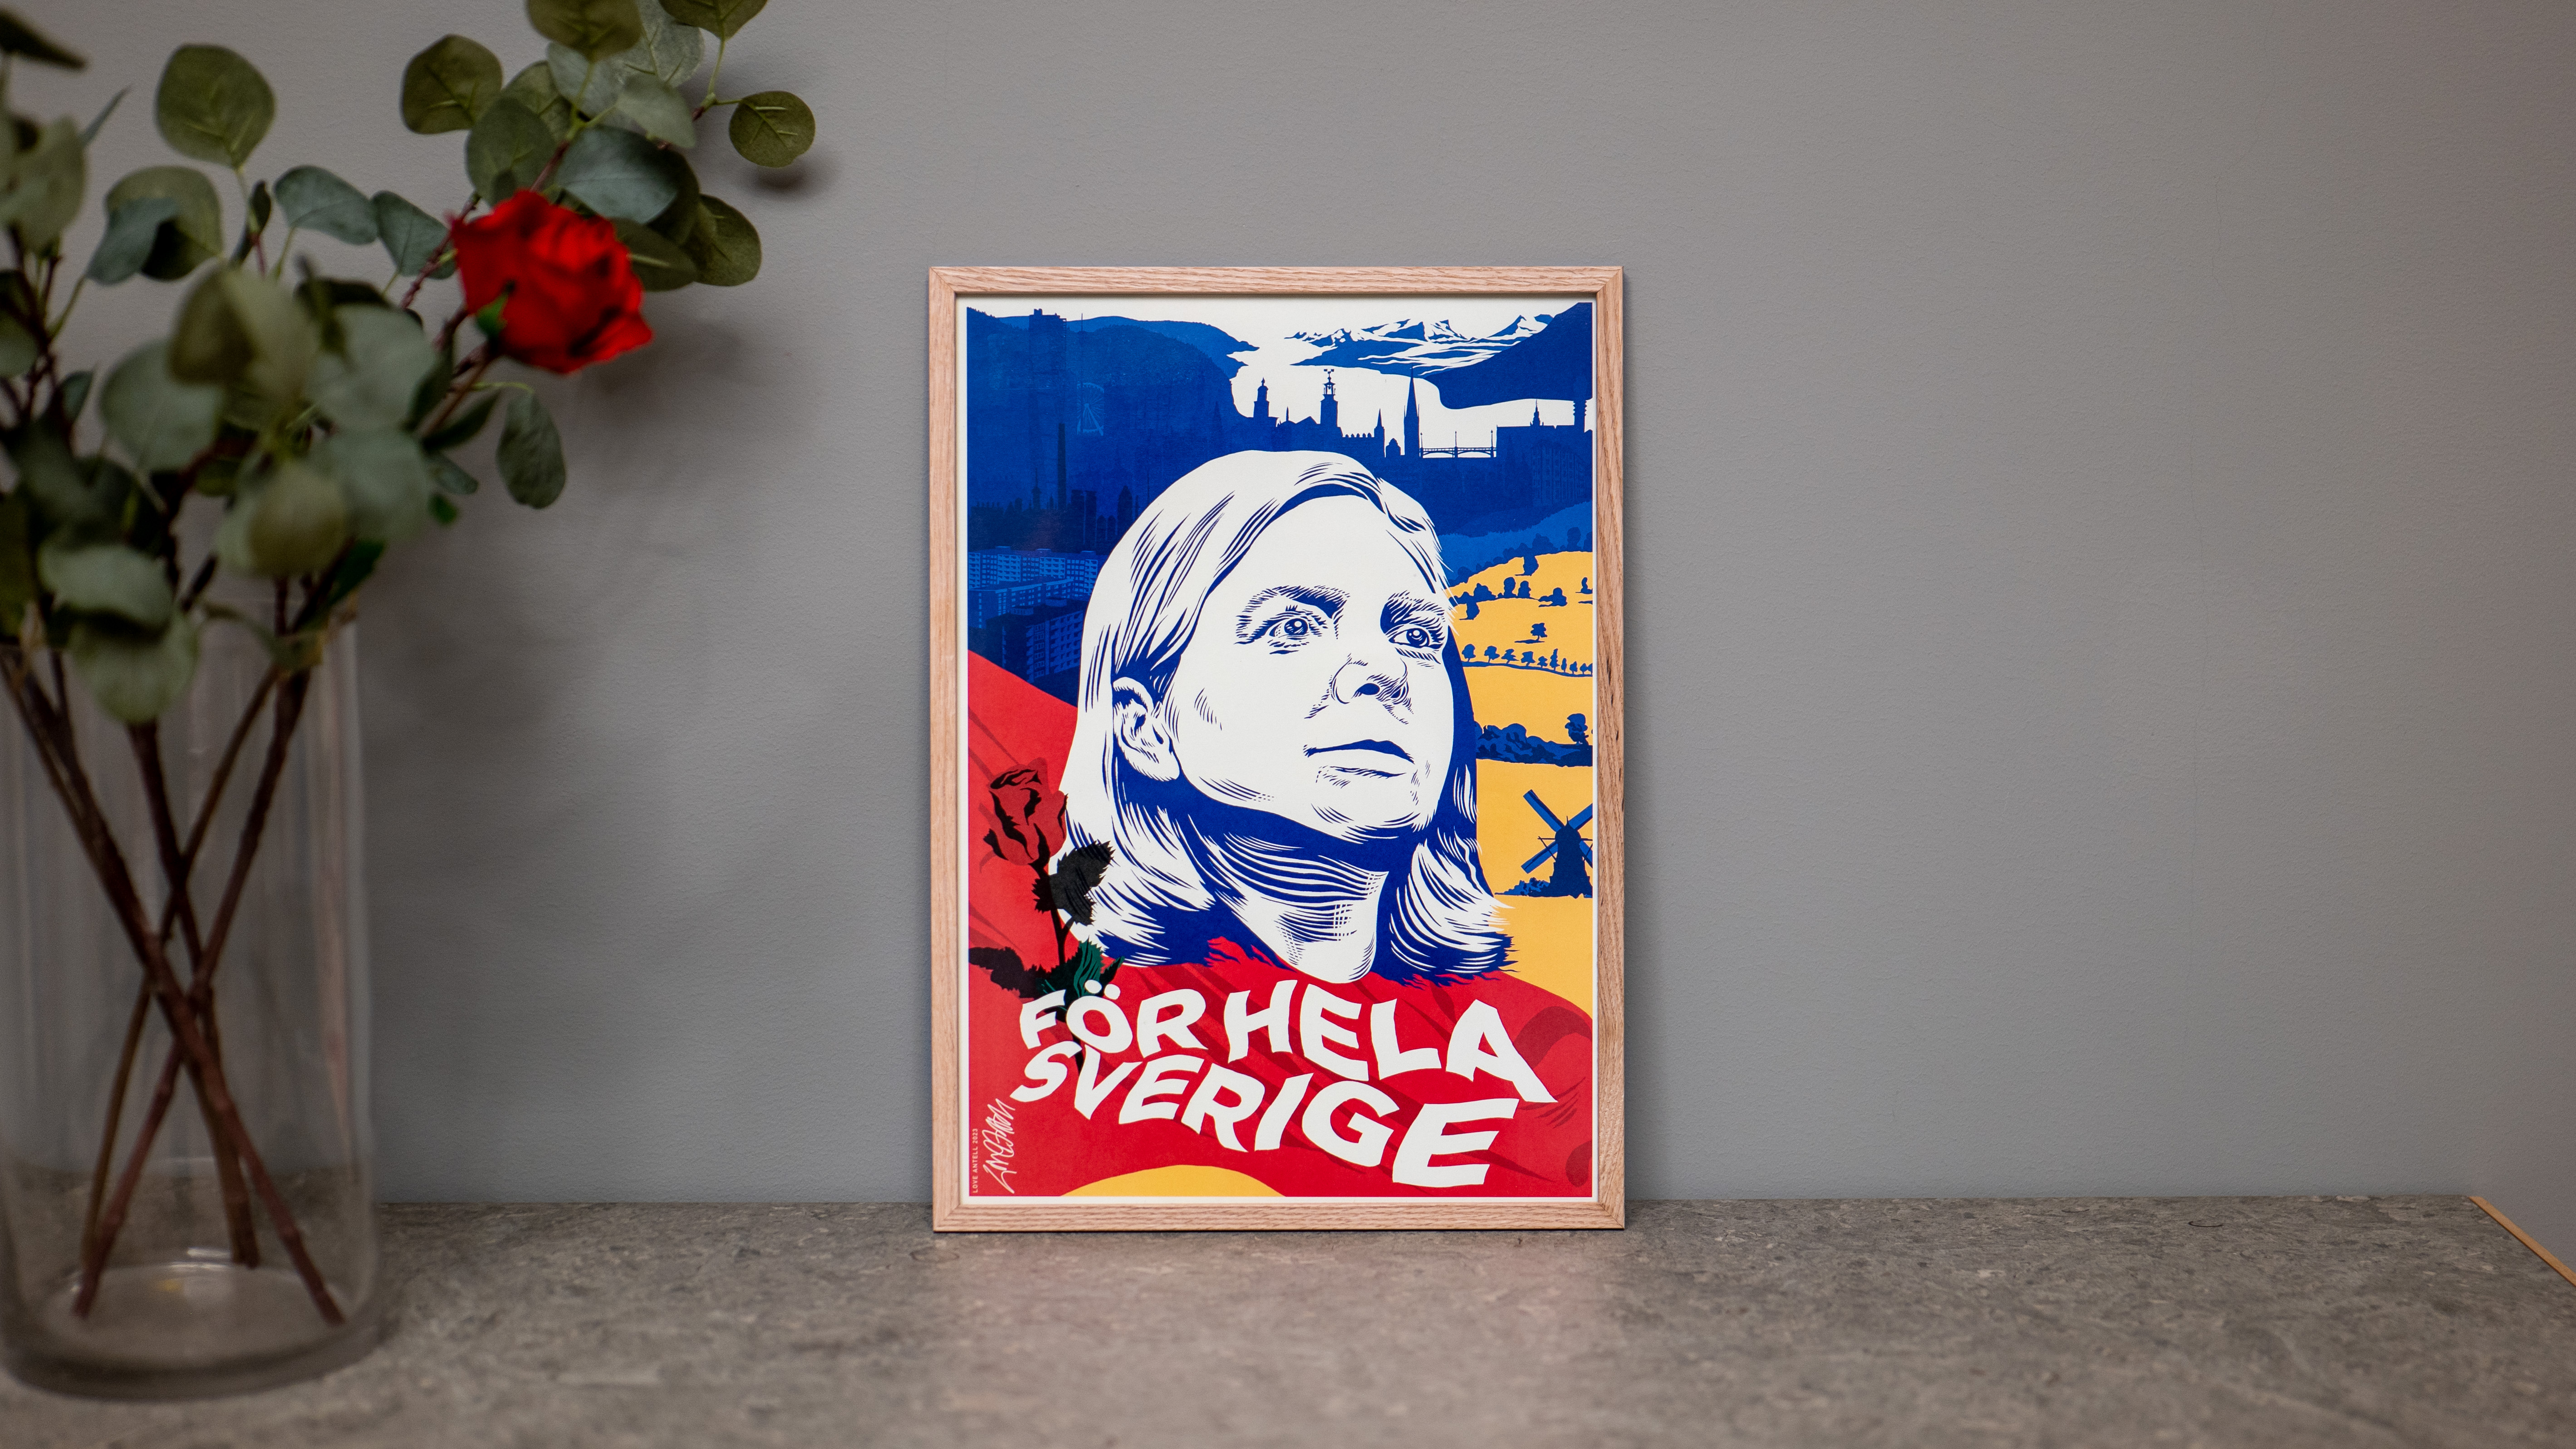 För hela Sverige - Affisch av Love Antell